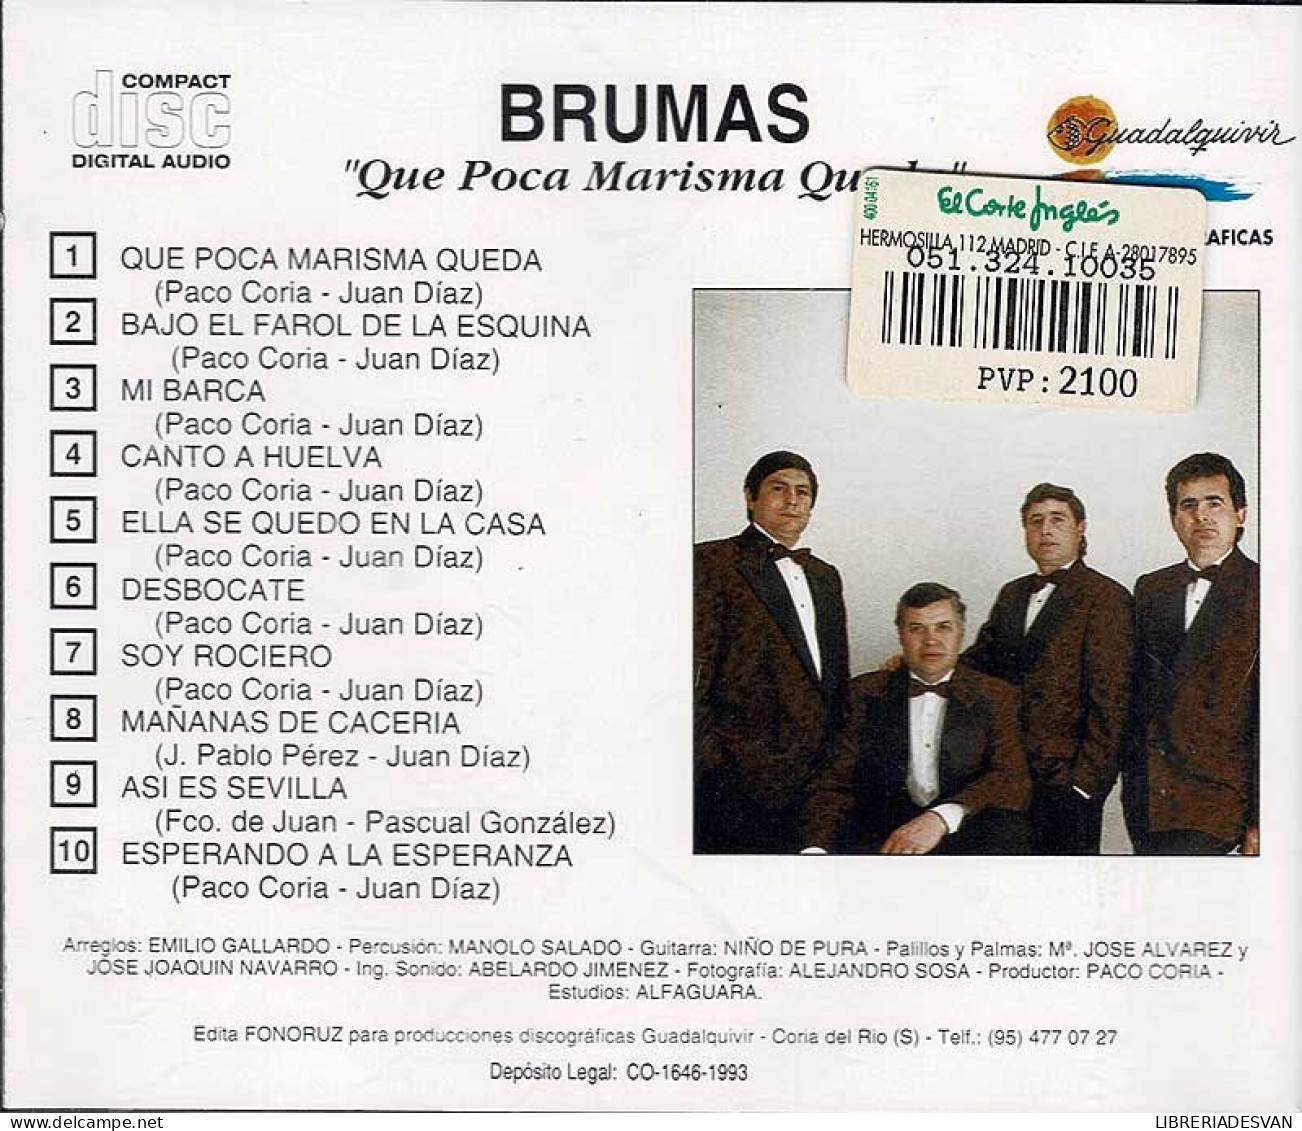 Brumas - Qué Poca Marisma Queda. CD - Other - Spanish Music